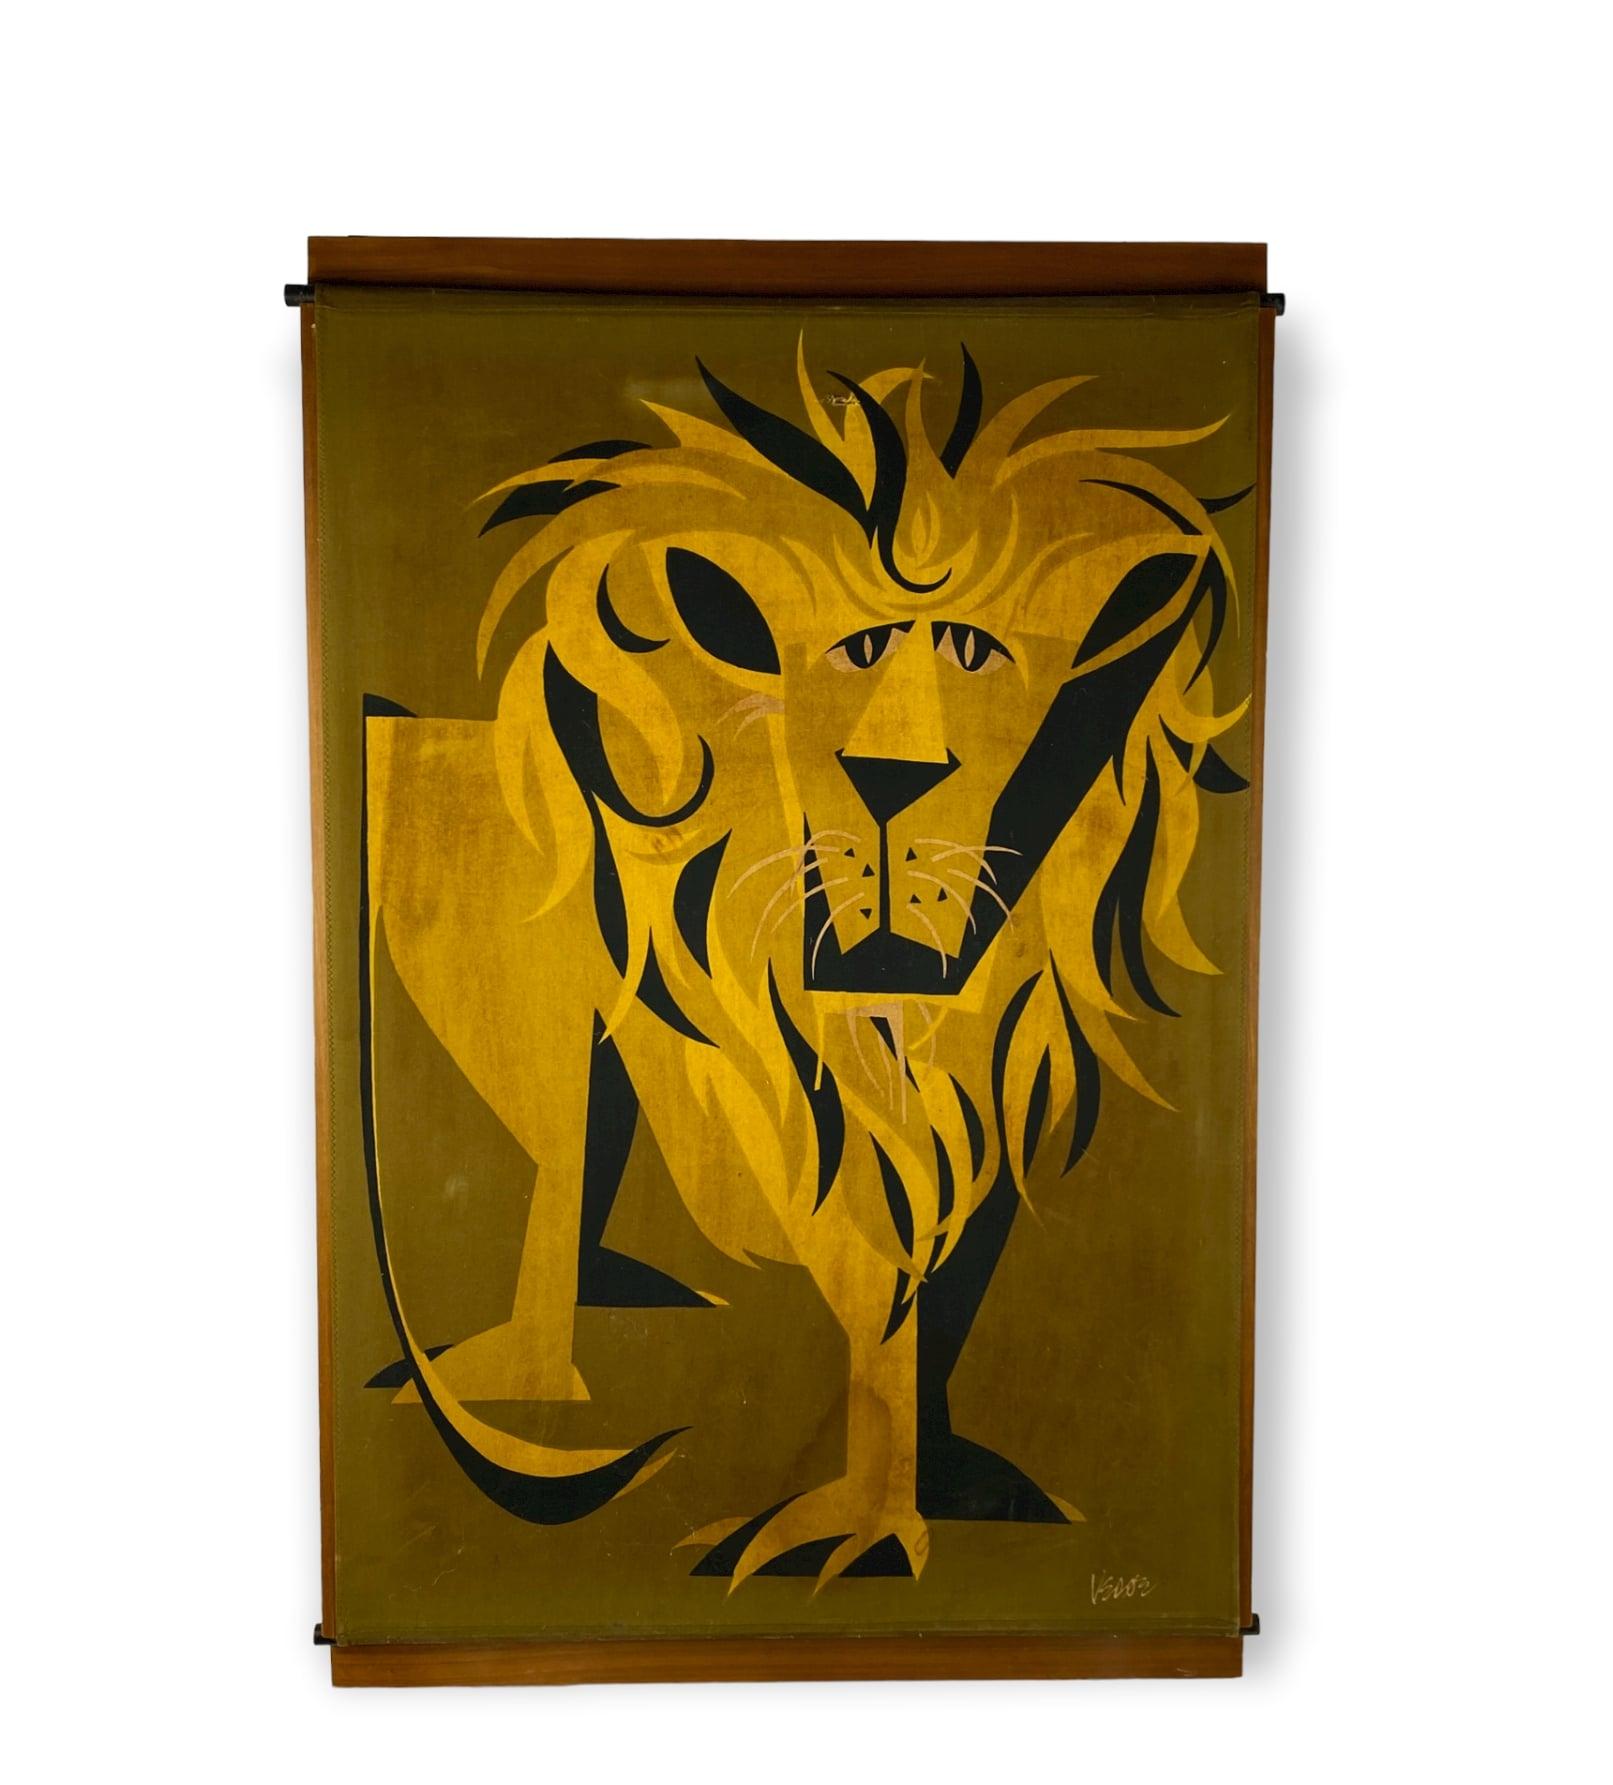 Panneau en bois du milieu du siècle, recouvert de tissu décoré d'une figure de lion. Signé.

Italie années 1960

L'objet est la porte d'un meuble sur mesure qui recouvrait un radiateur. Il provient du mobilier sur mesure conçu par Ignazio Gardella